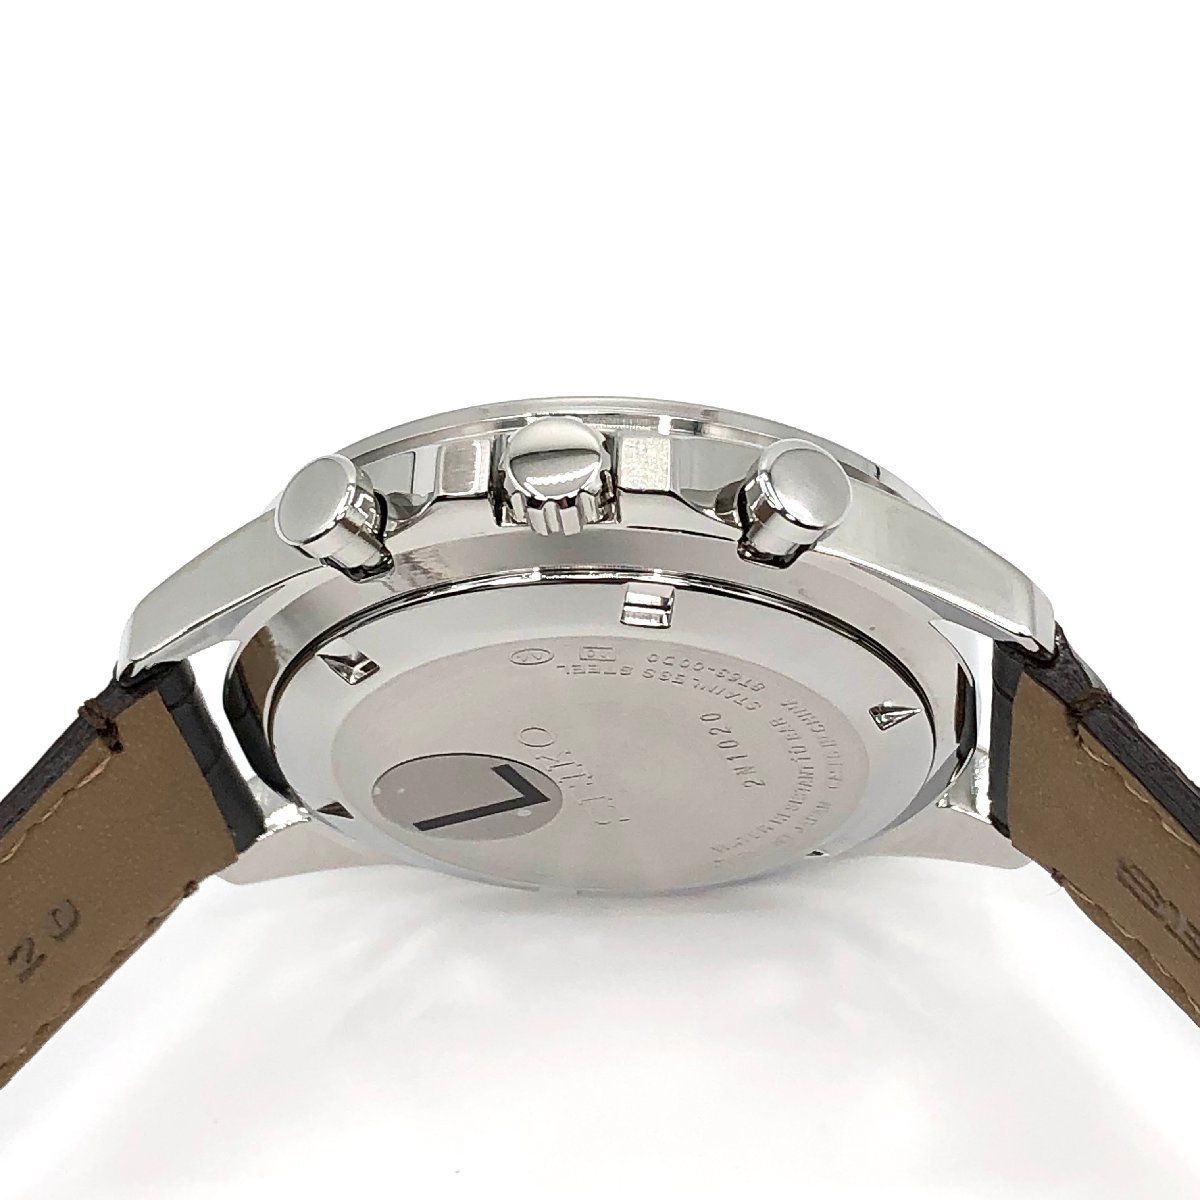 新品正規品『SEIKO SELECTION』セイコー セレクション クロノグラフ 腕時計 メンズ SBTR017【送料無料】_画像4